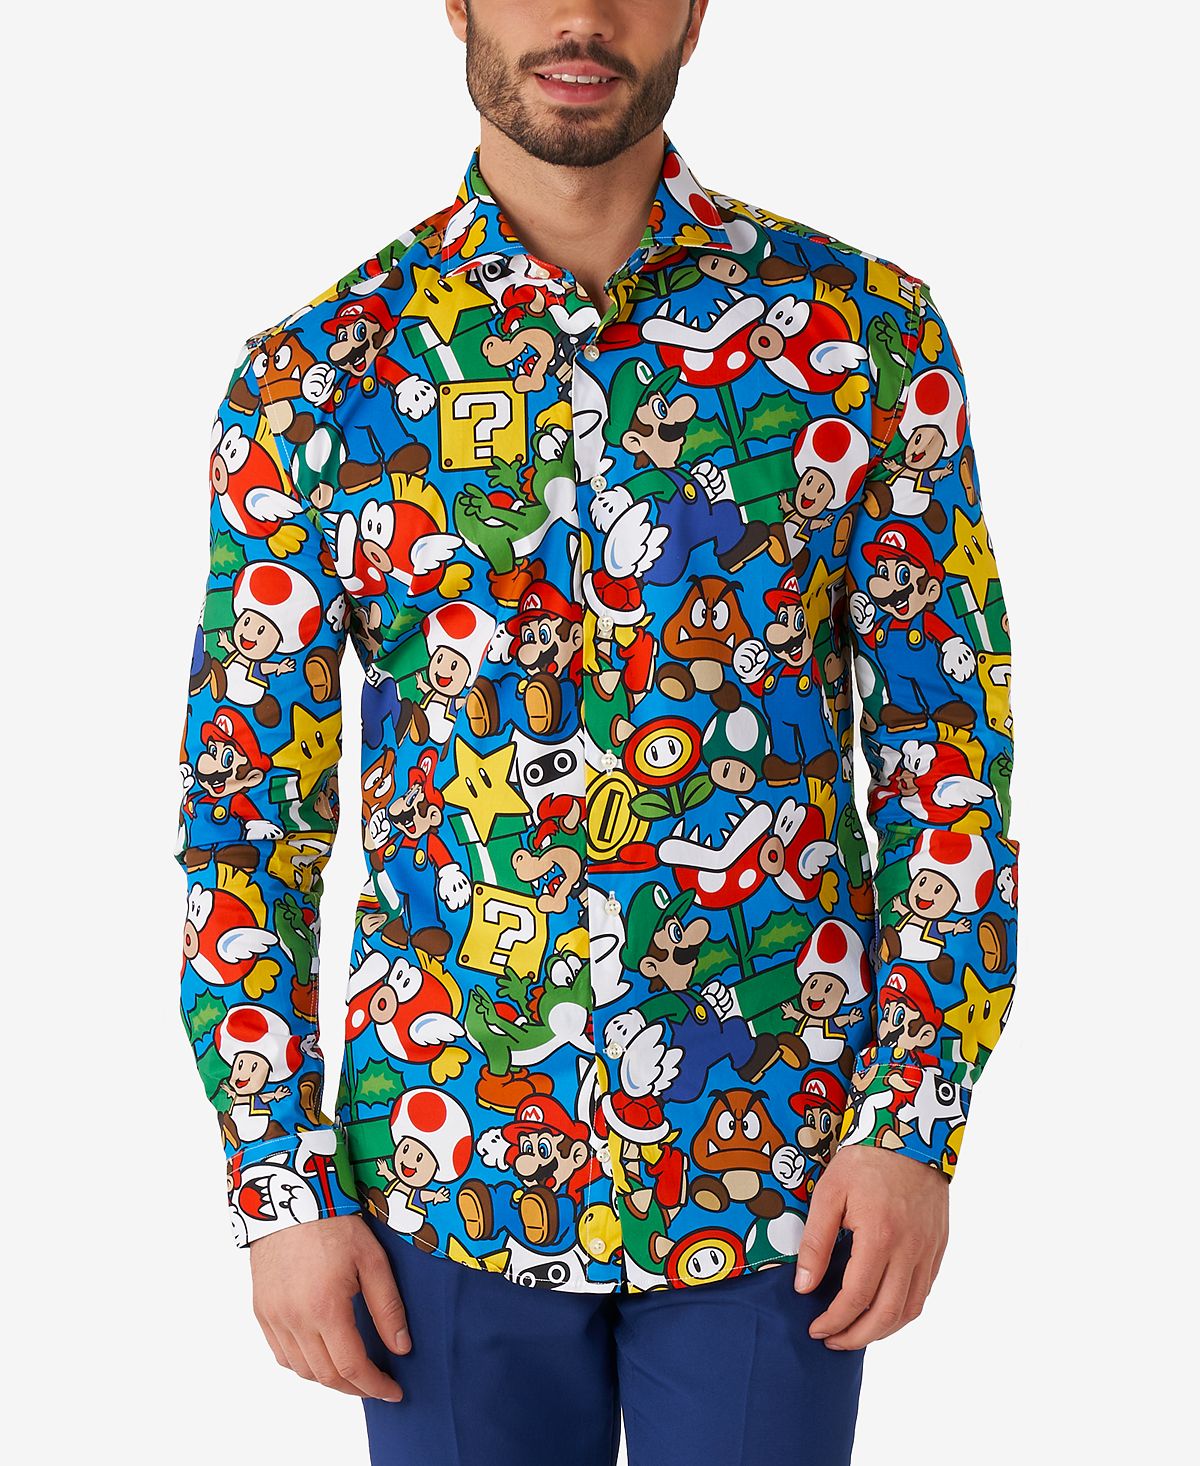 Мужская классическая рубашка nintendo с лицензией super mario OppoSuits